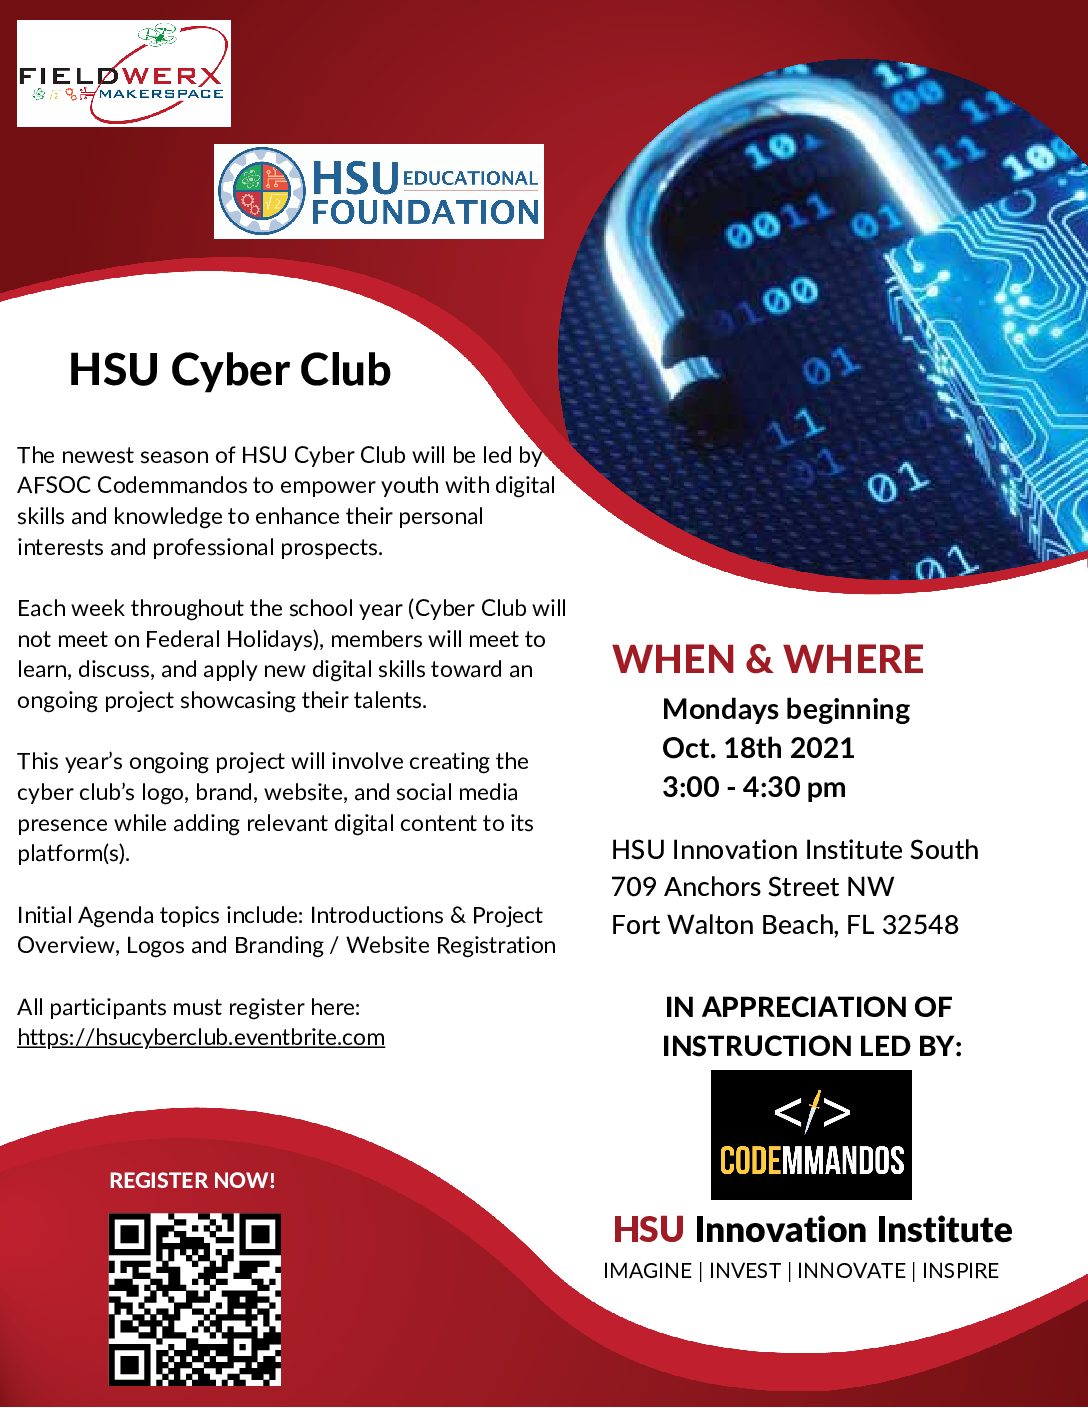 HSU Cyber Club with Codemmandos Starts 10/18/21